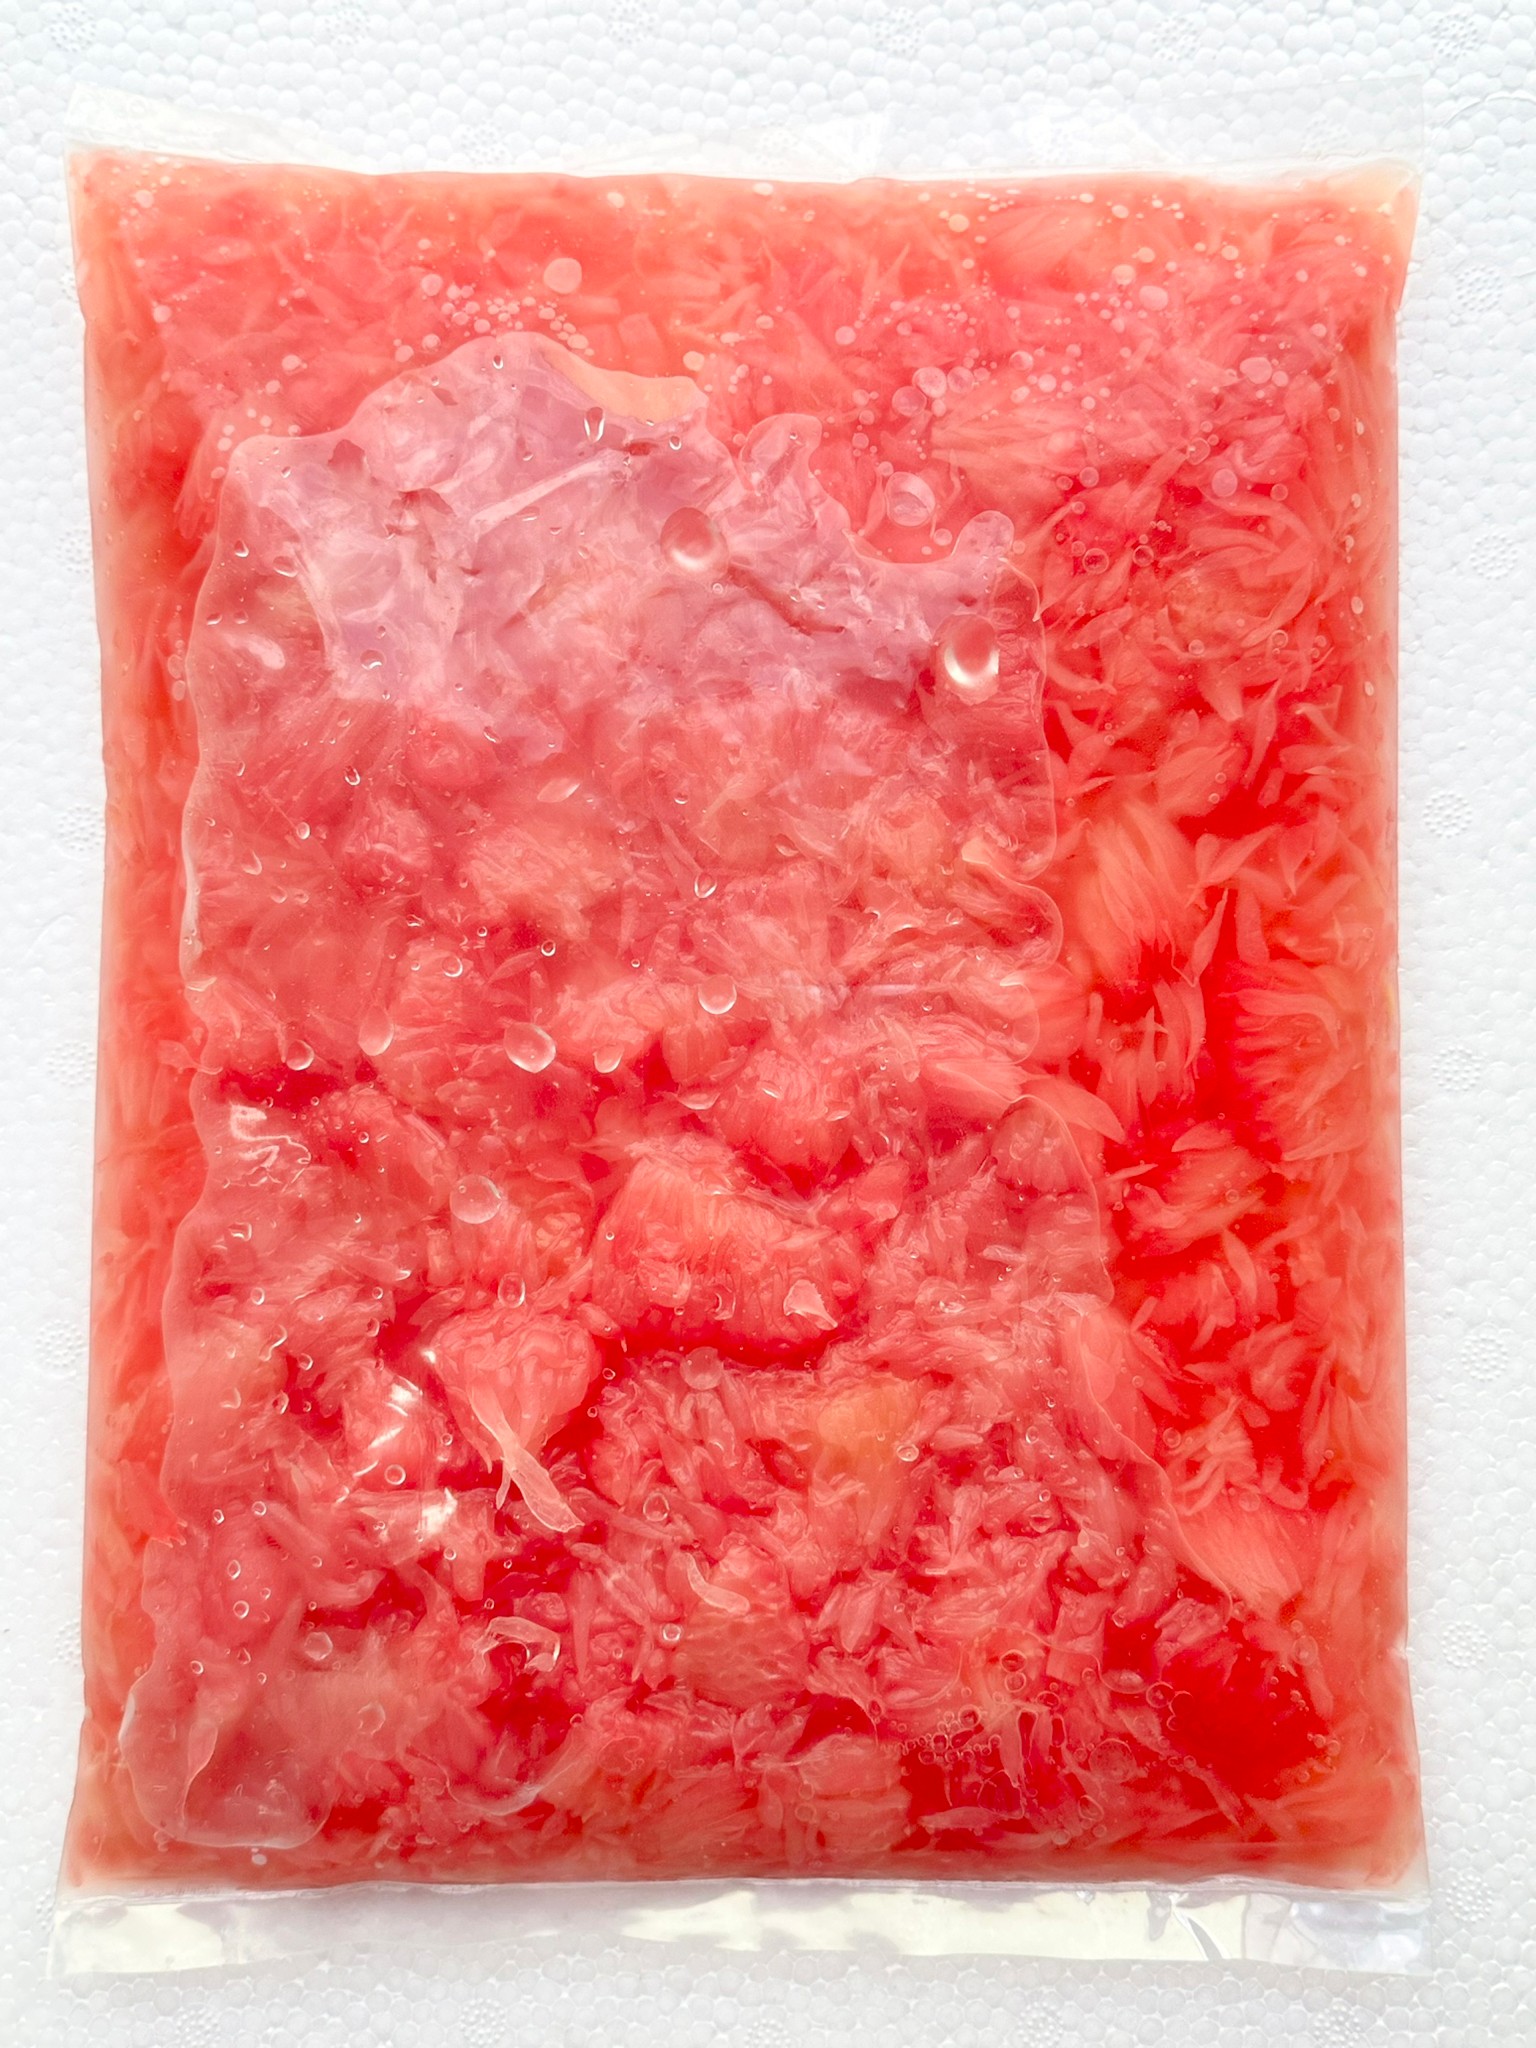 冷凍文旦柚肉(紅肉)